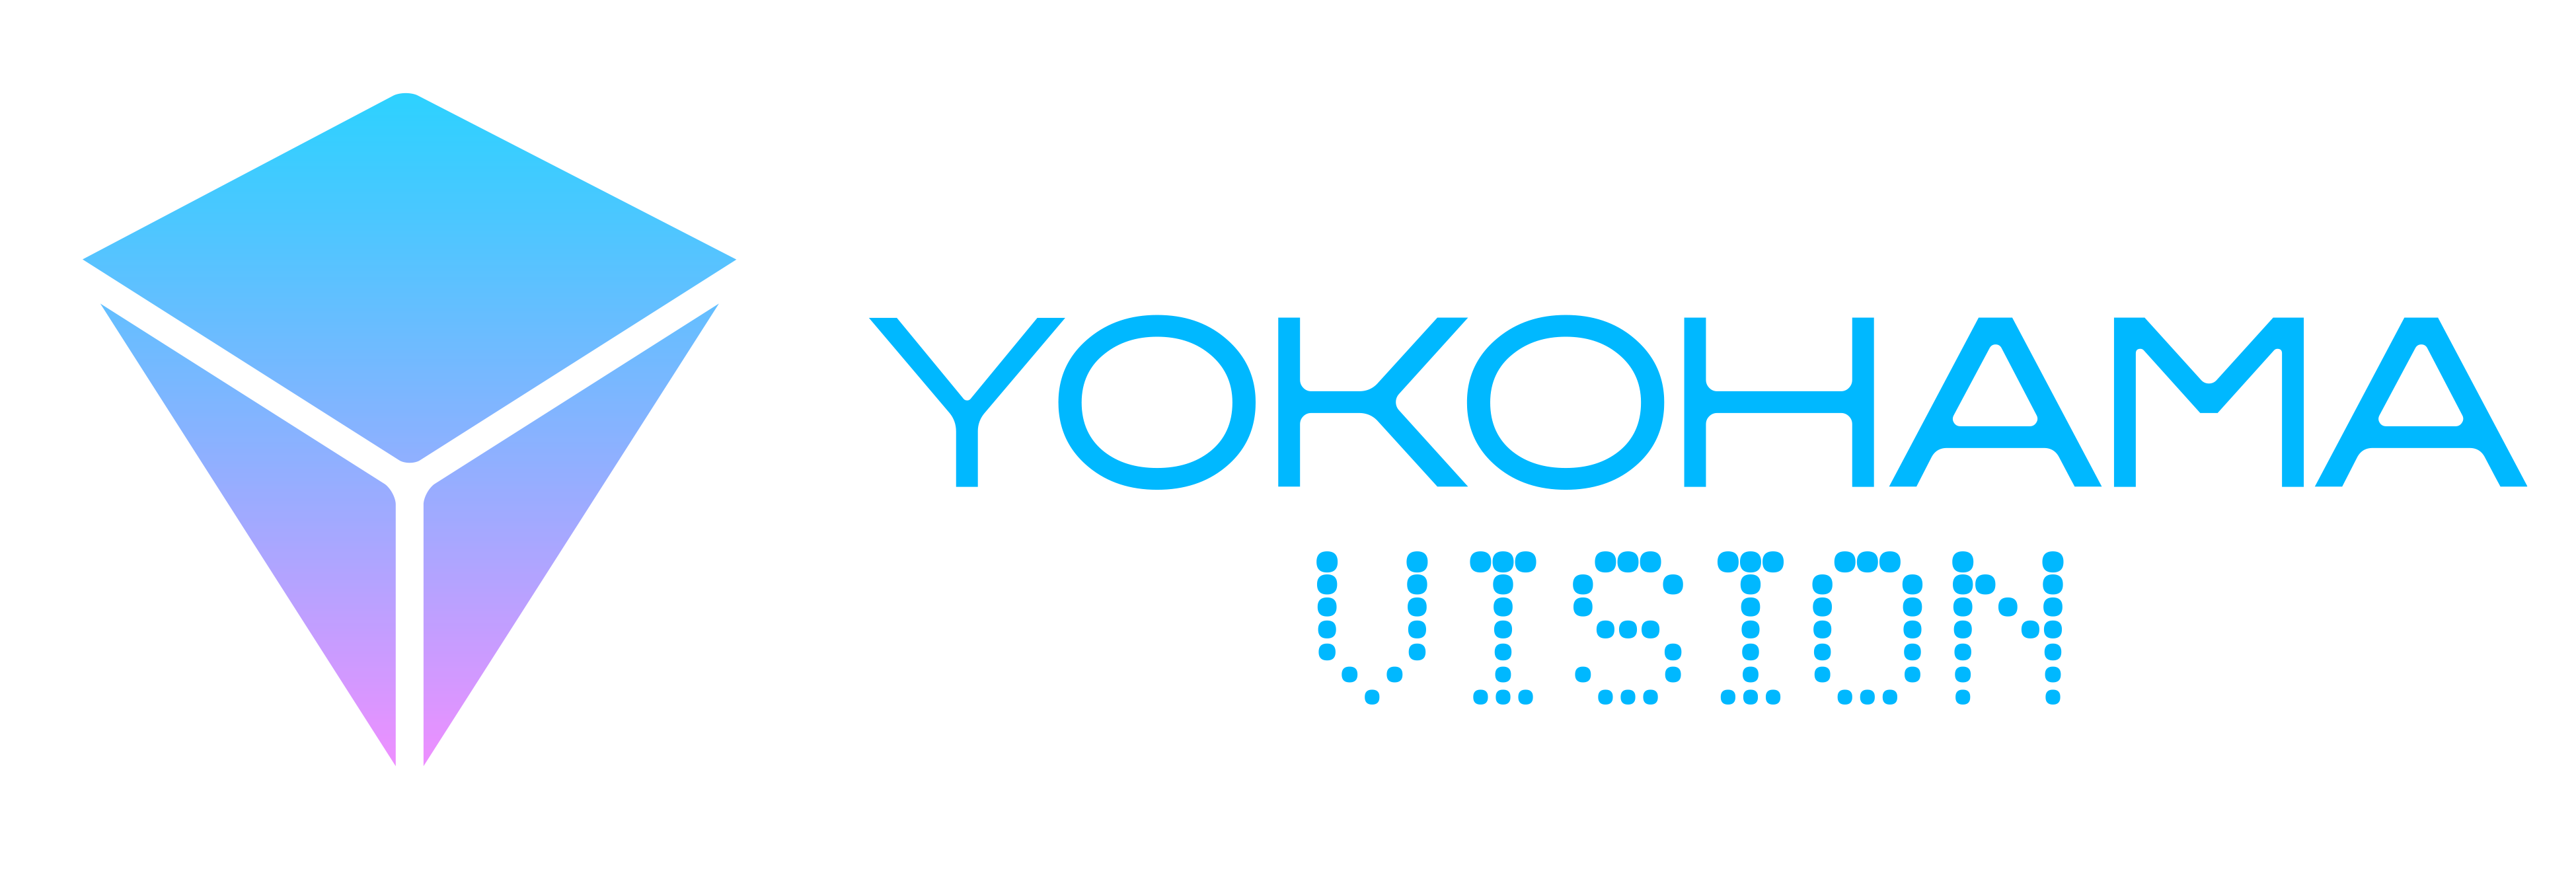 YOKOHAMA VISIONのロゴ